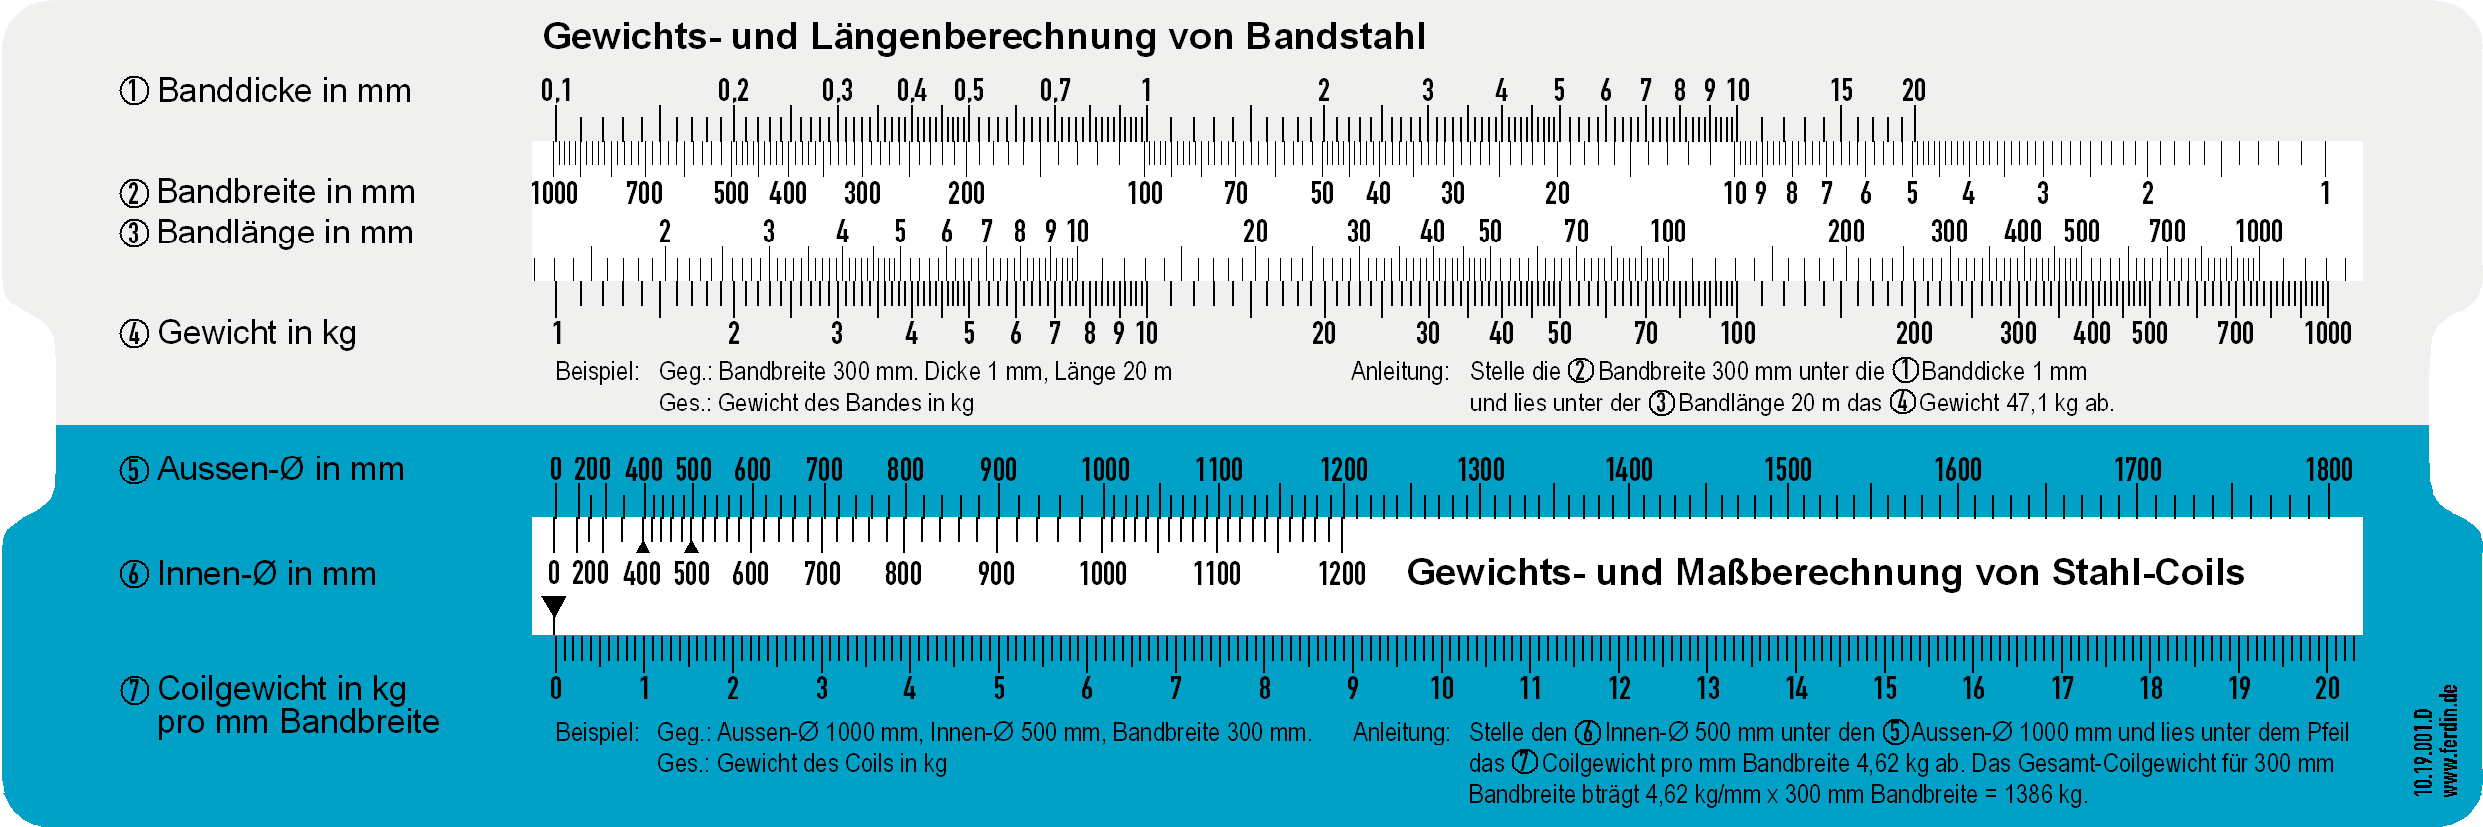 Bandstahl und Härtevergleich Schieber Vorderseite Gewichts- und Längenberechnung von Bandstahl und Stahlcoils